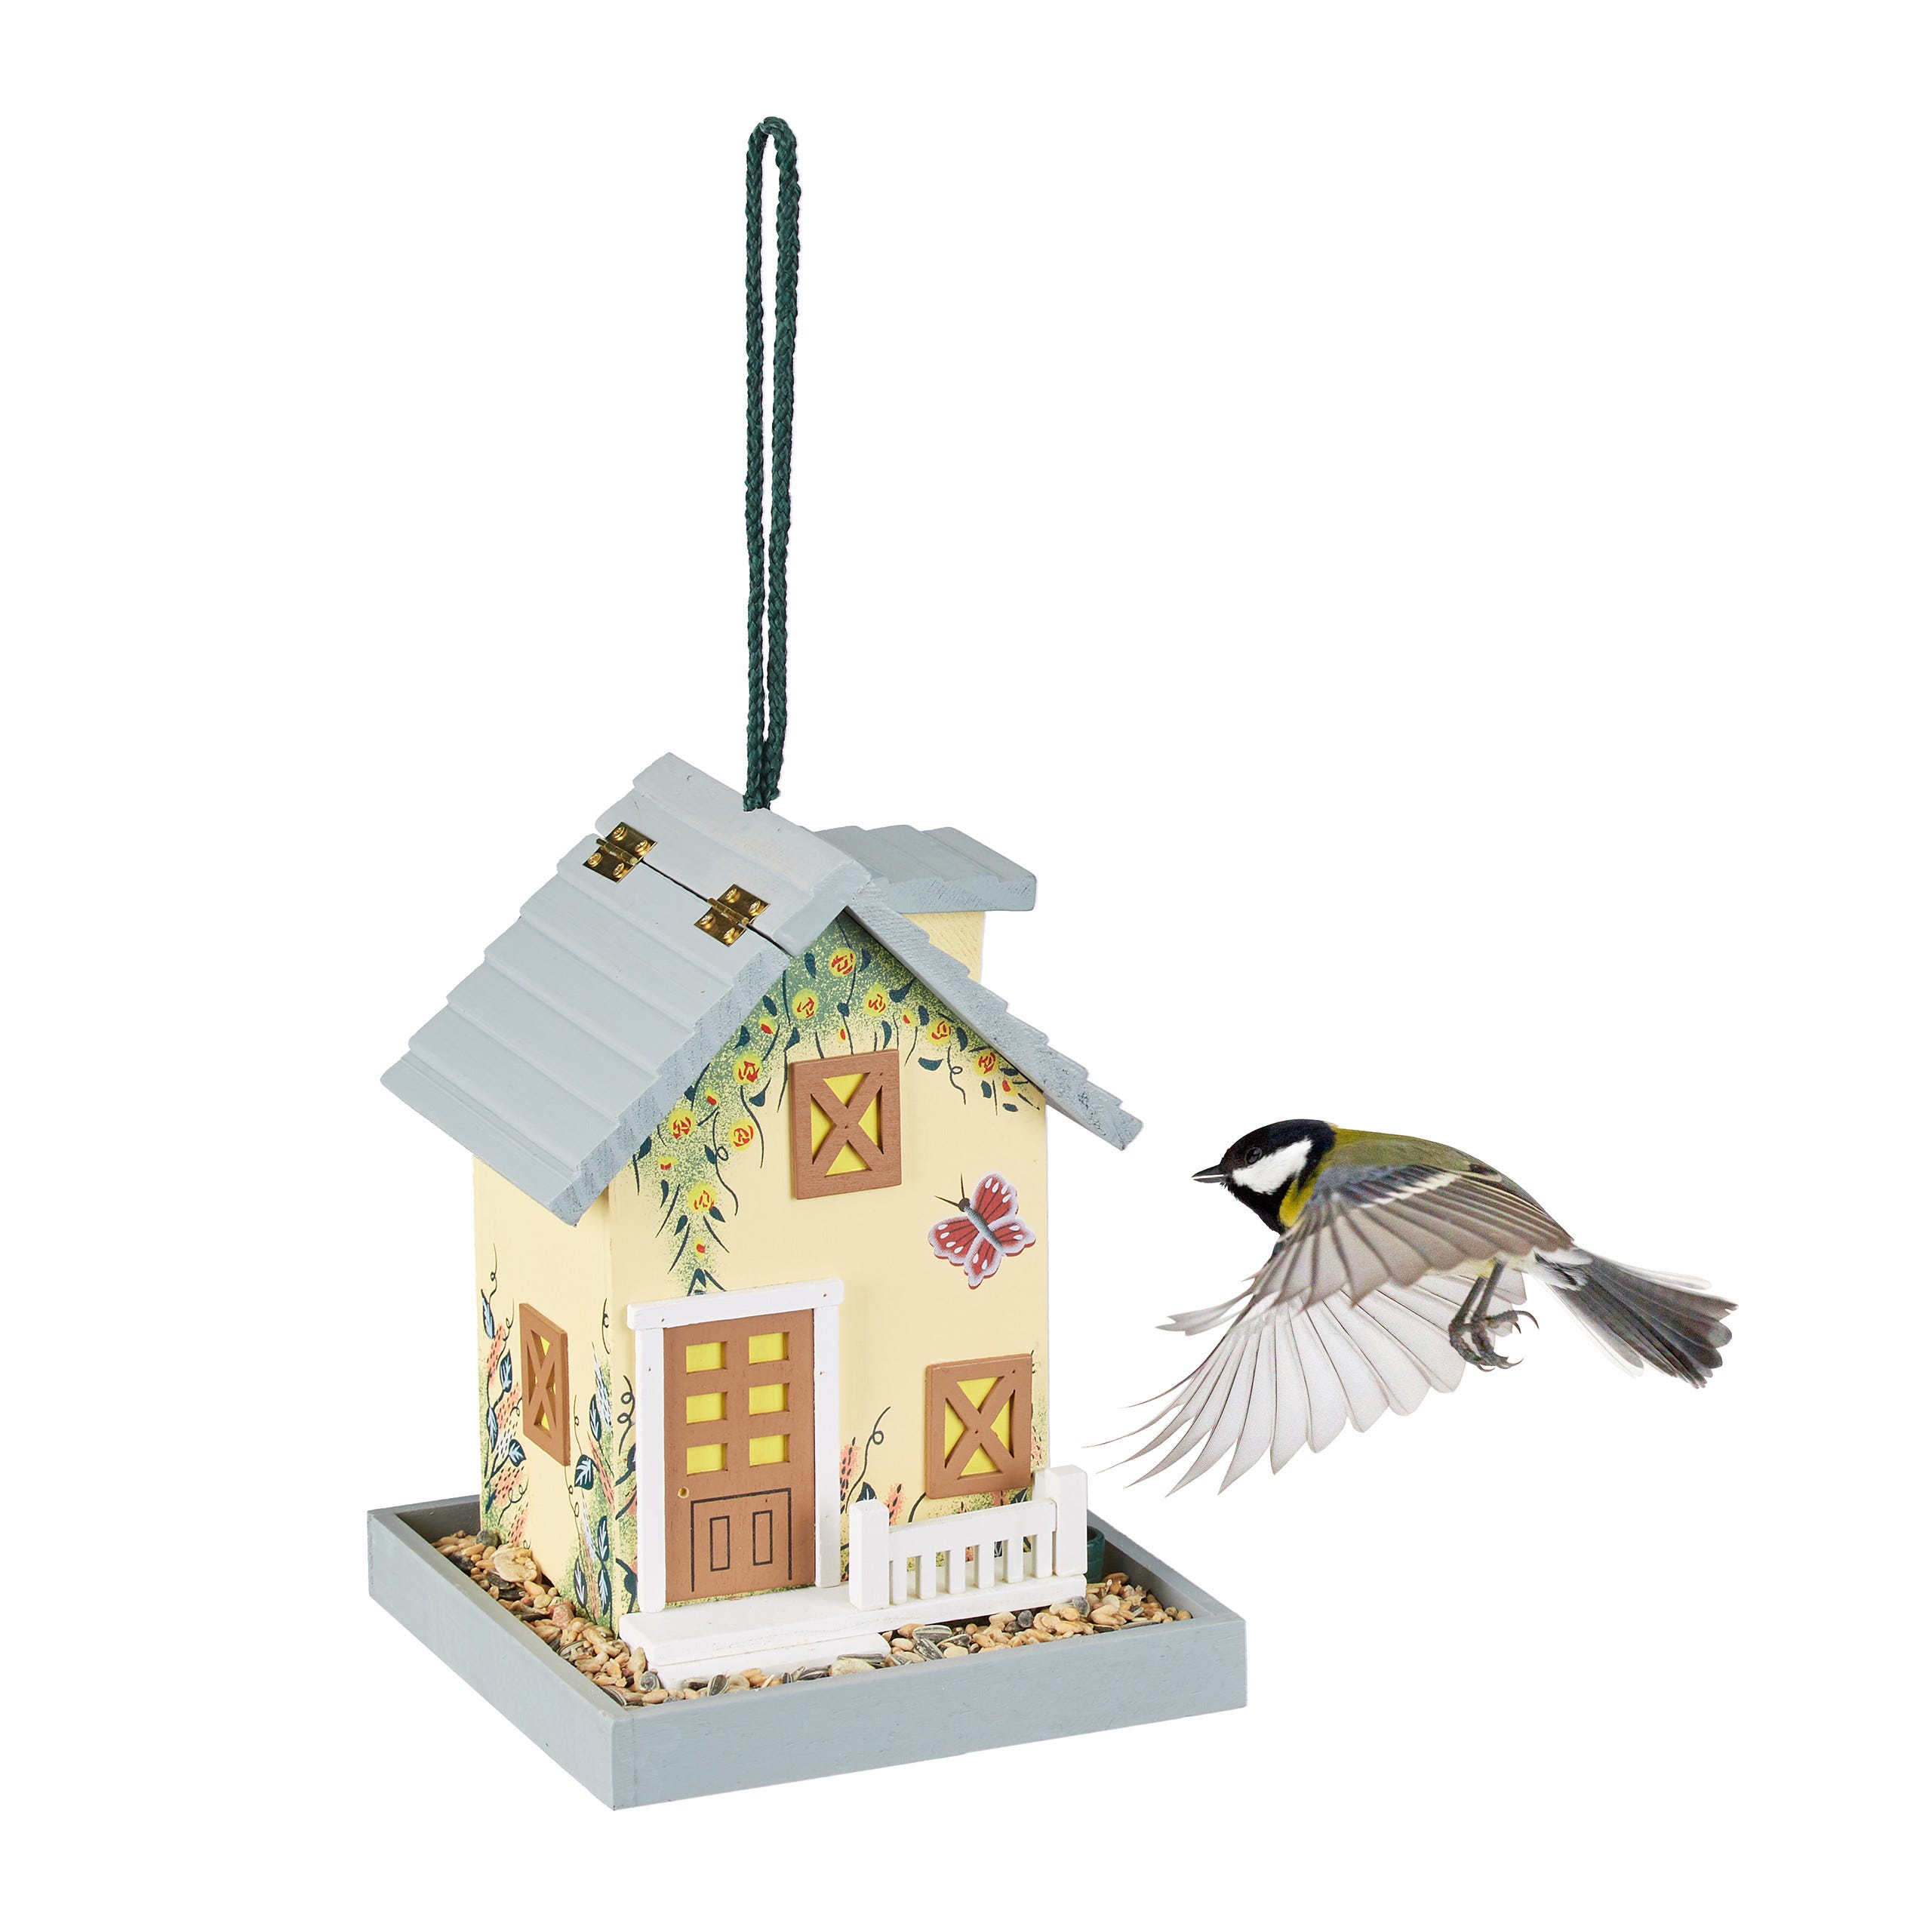 Relaxdays Mangeoire d'extérieur pour oiseaux, cabane de jardin en bois, à  suspendre, HLP: 23,5x18x18 cm, multicolore